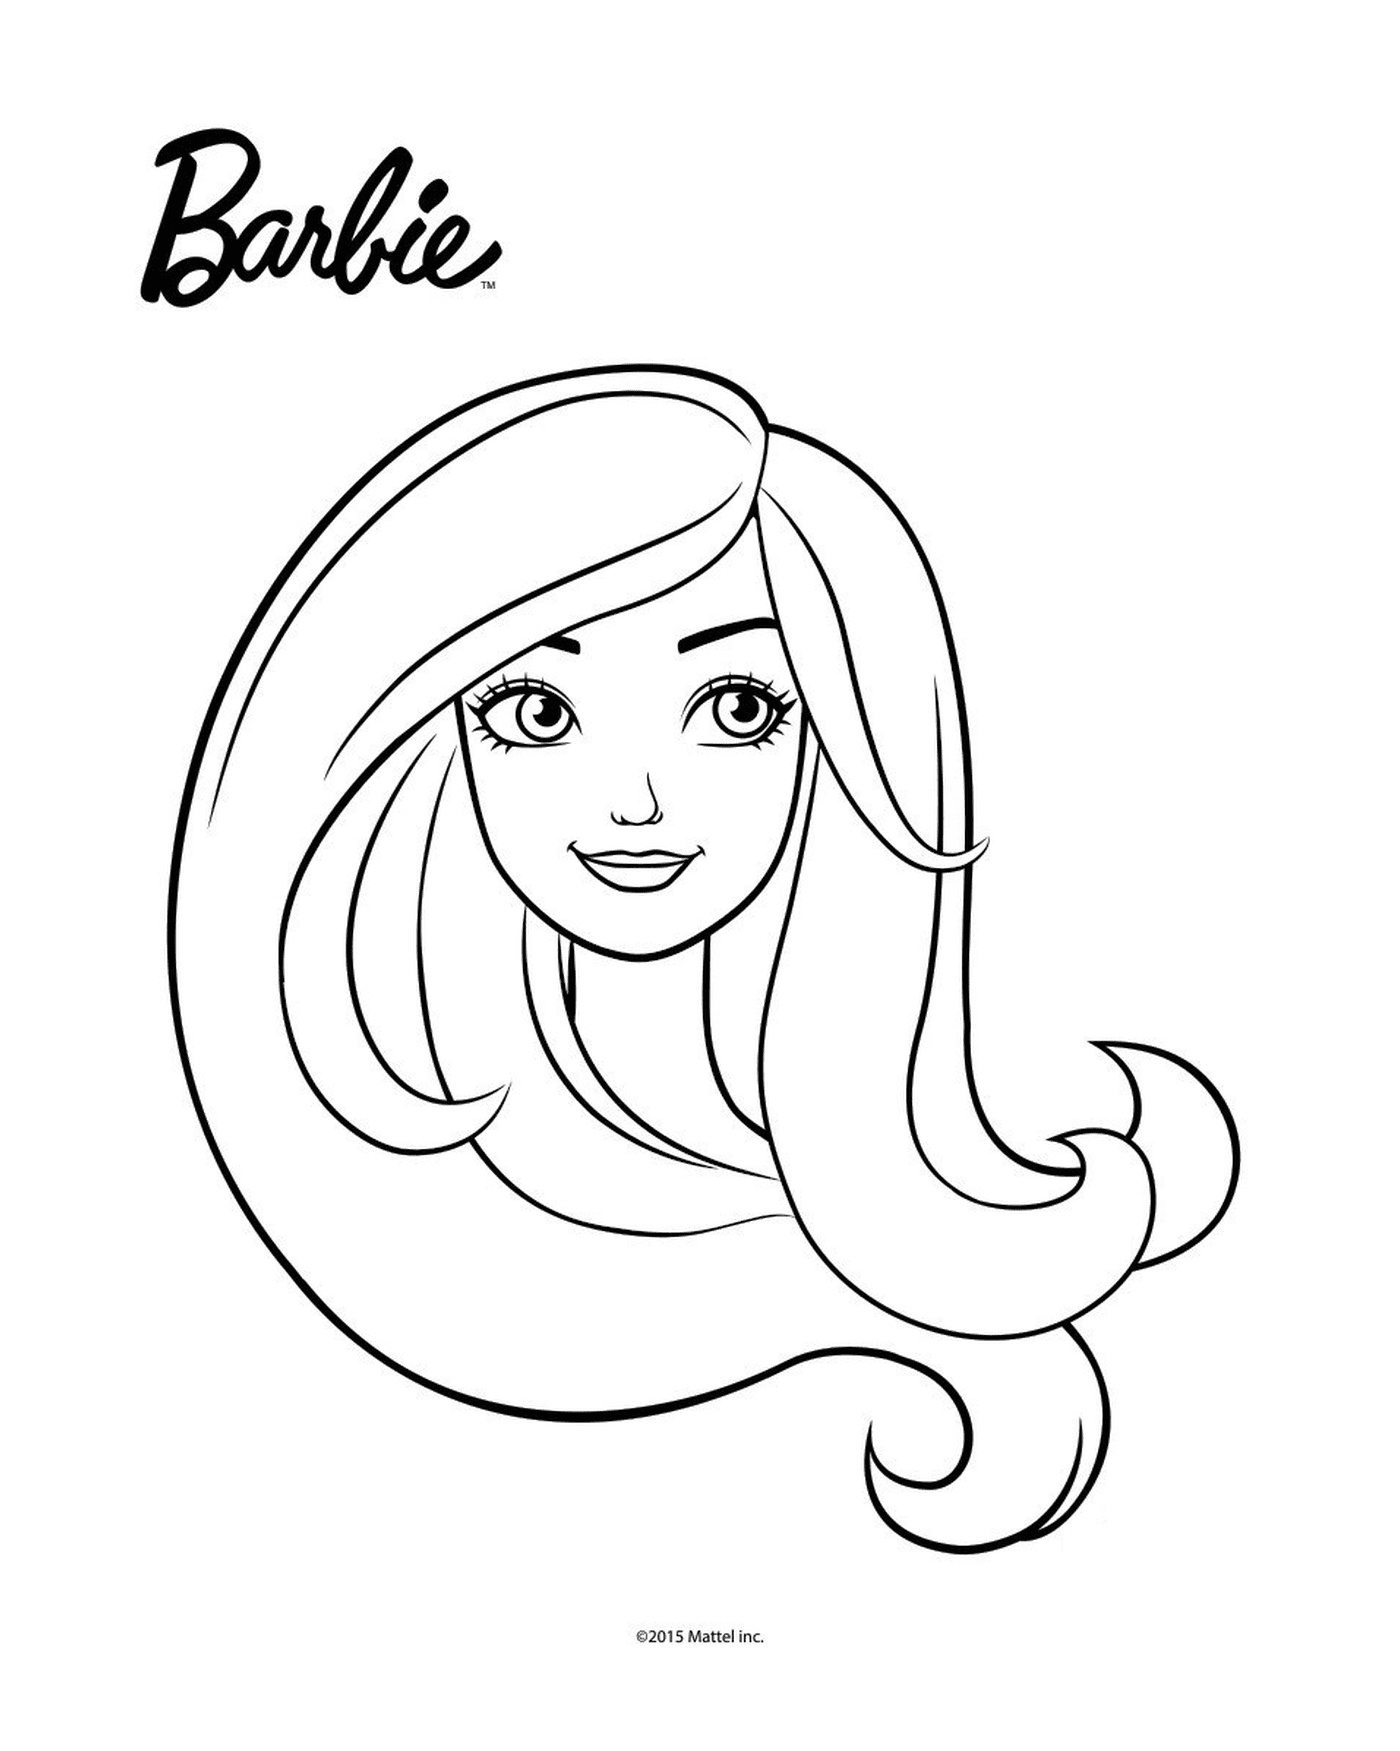   Le visage de Barbie 